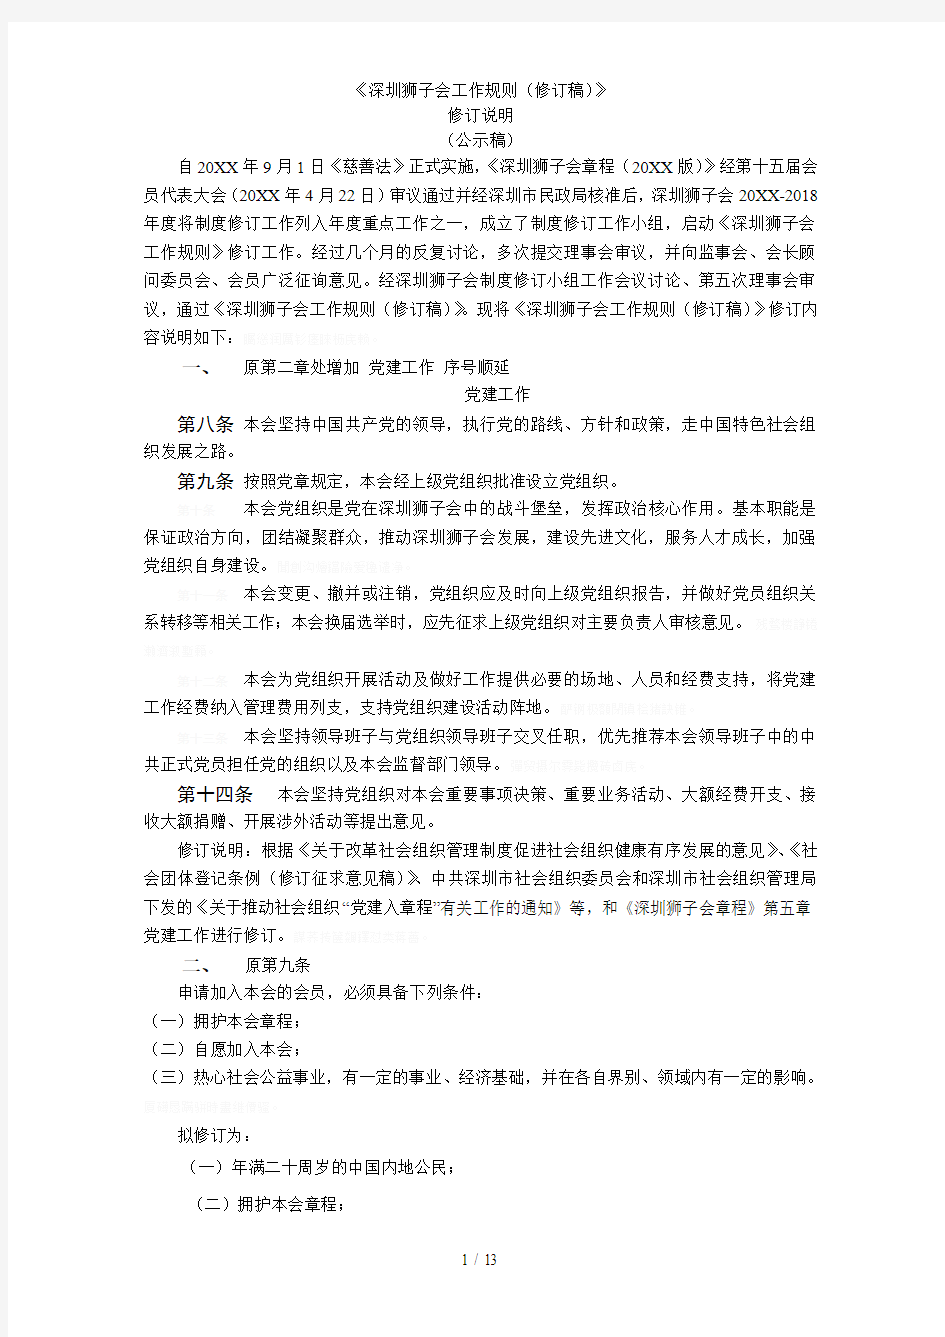 《深圳狮子会工作规则(修订稿)》